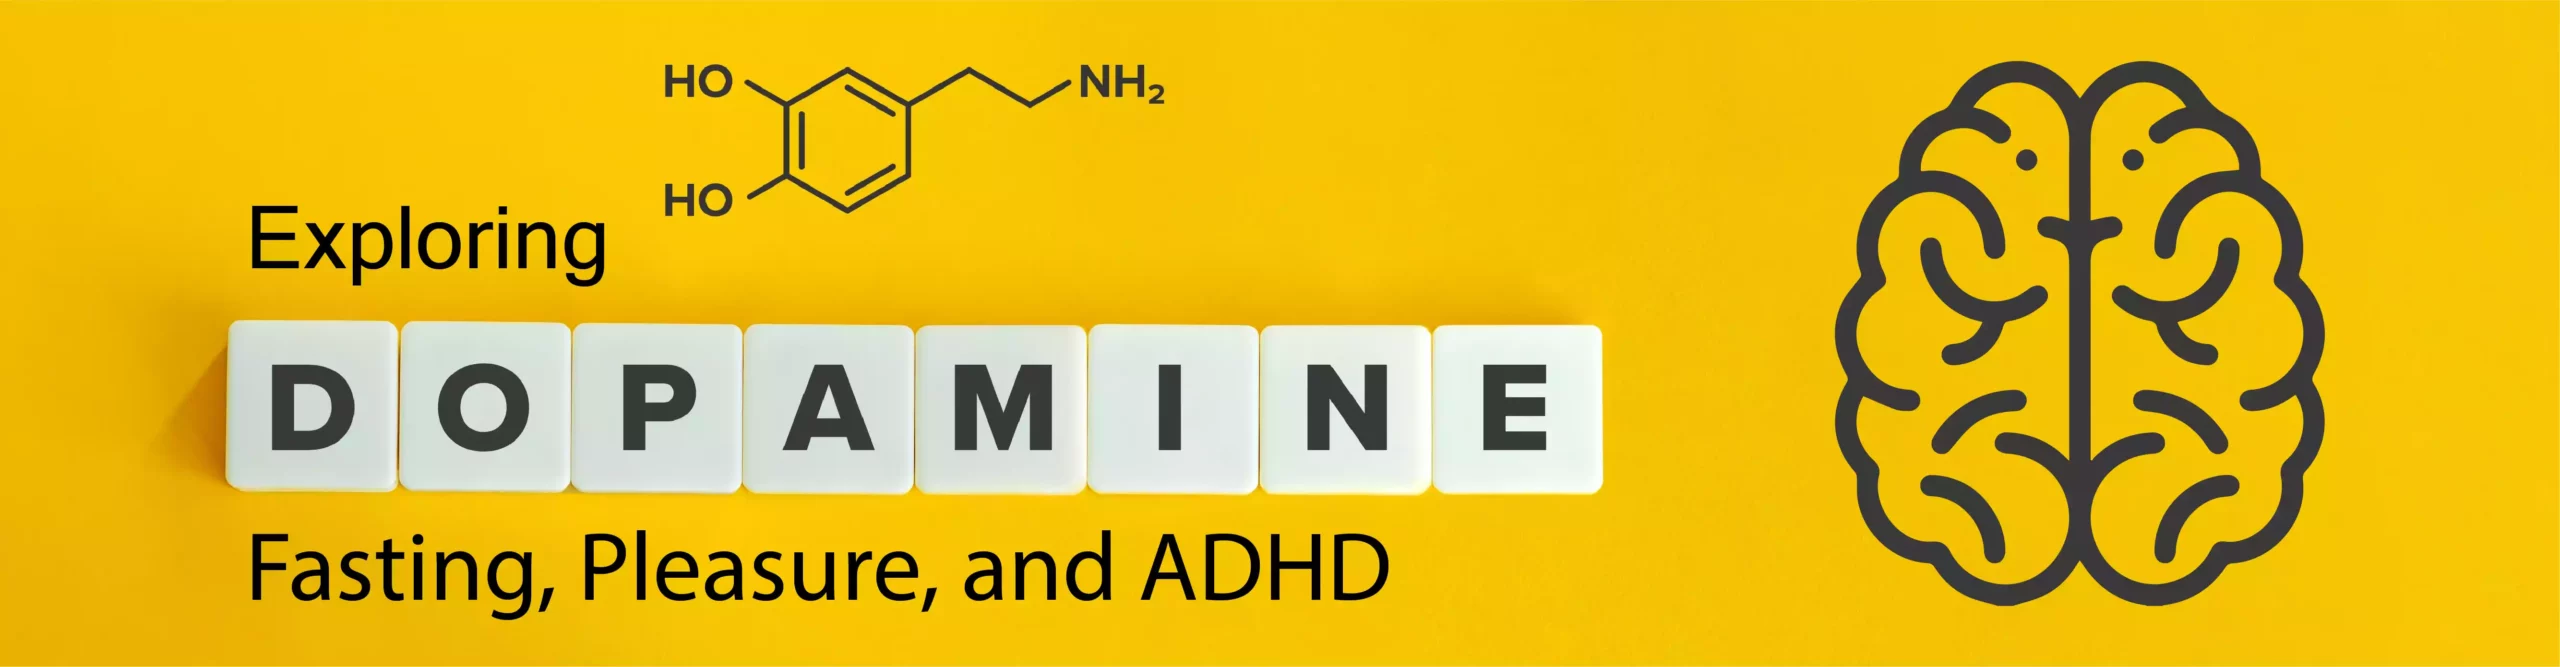 Explore Dopamine Fasting, Pleasure, and ADHD